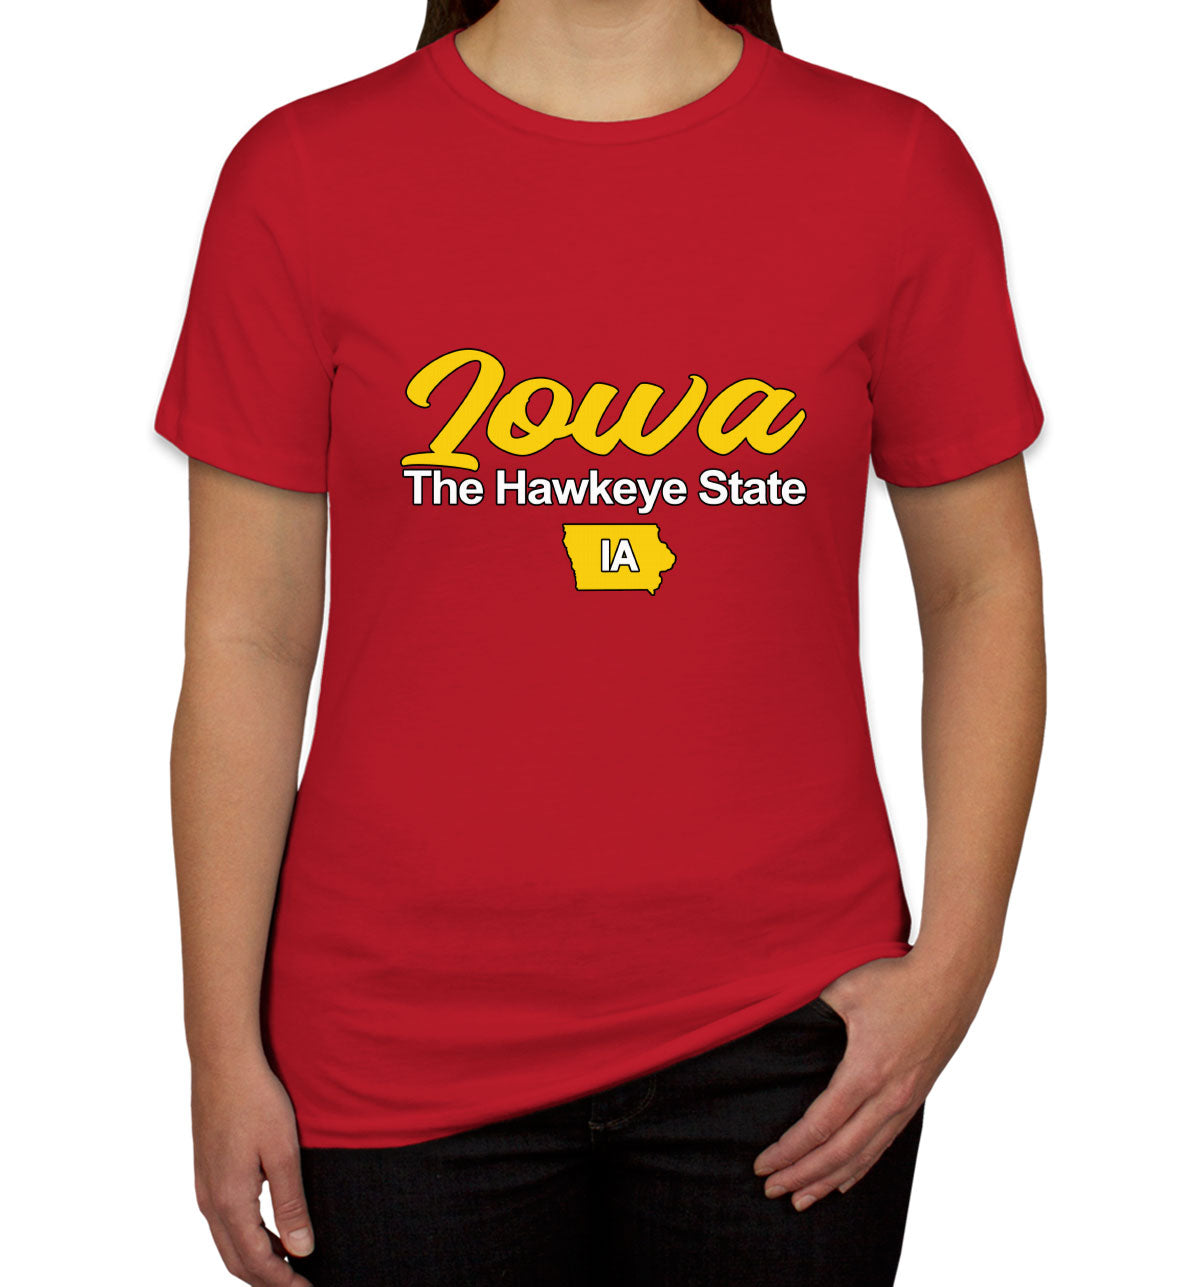 Iowa The Hawkeye State Women's T-shirt